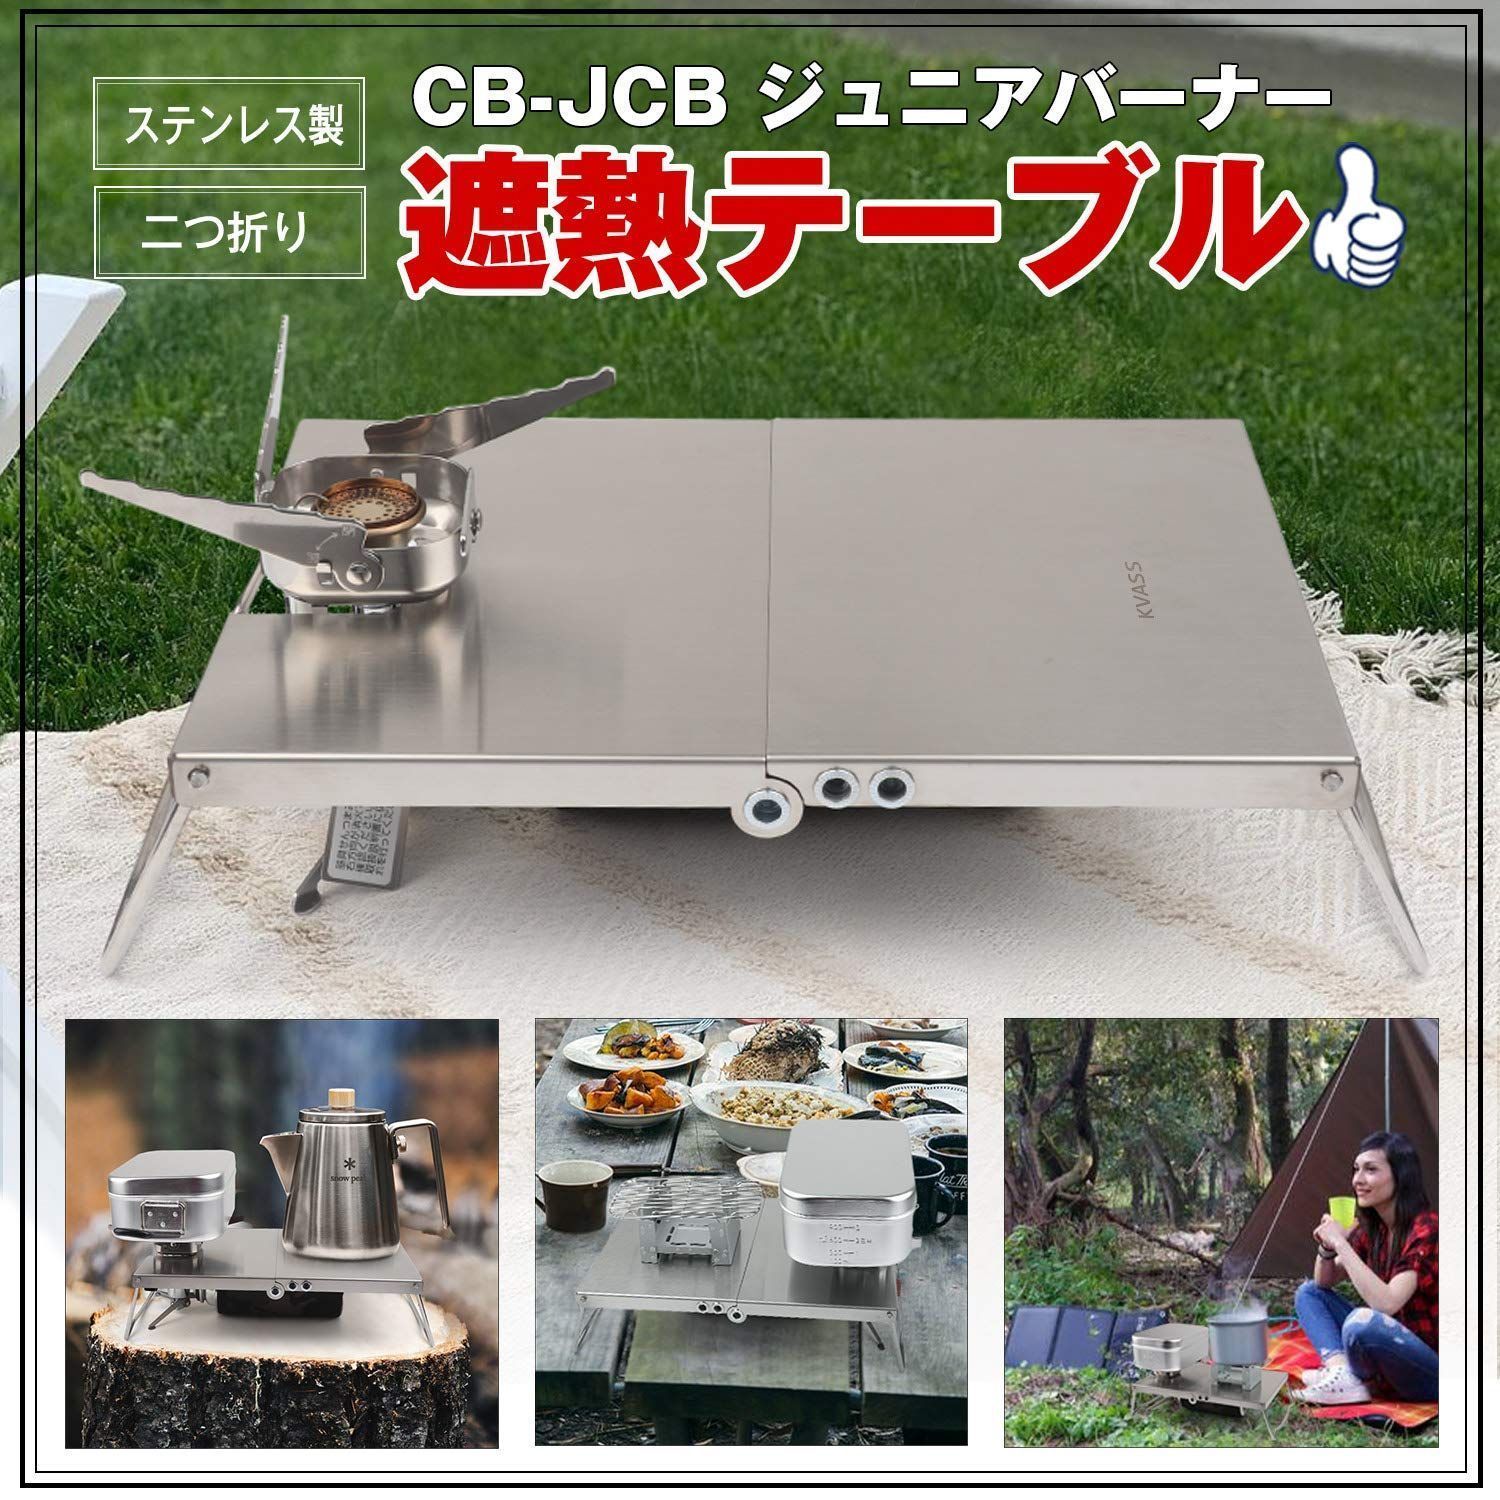 販売実績No.1 KVASS イワタニ ジュニアコンパクトバーナー ステンレス製 遮熱板 CB-JCB 専用 テーブル アウトドアウエア 